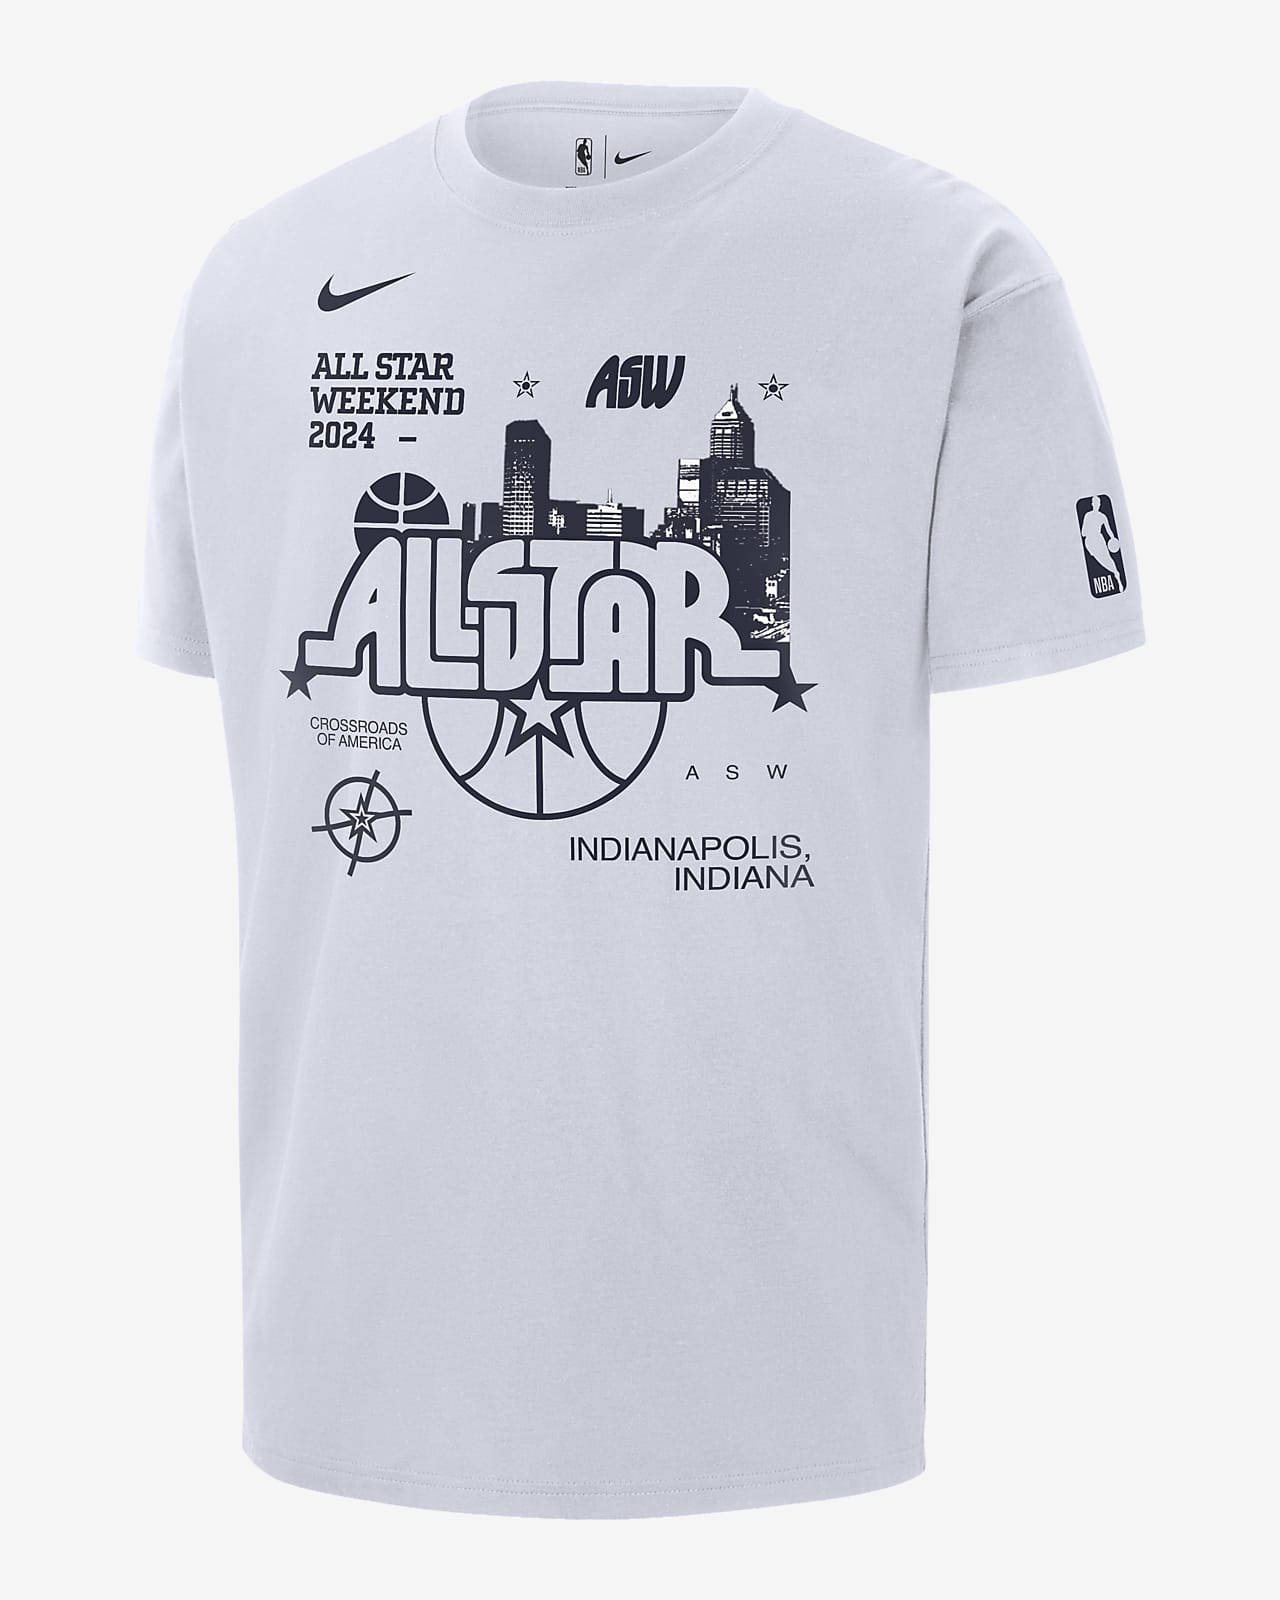 Playera Nike de la NBA Max90 para hombre 2024 All-Star Weekend